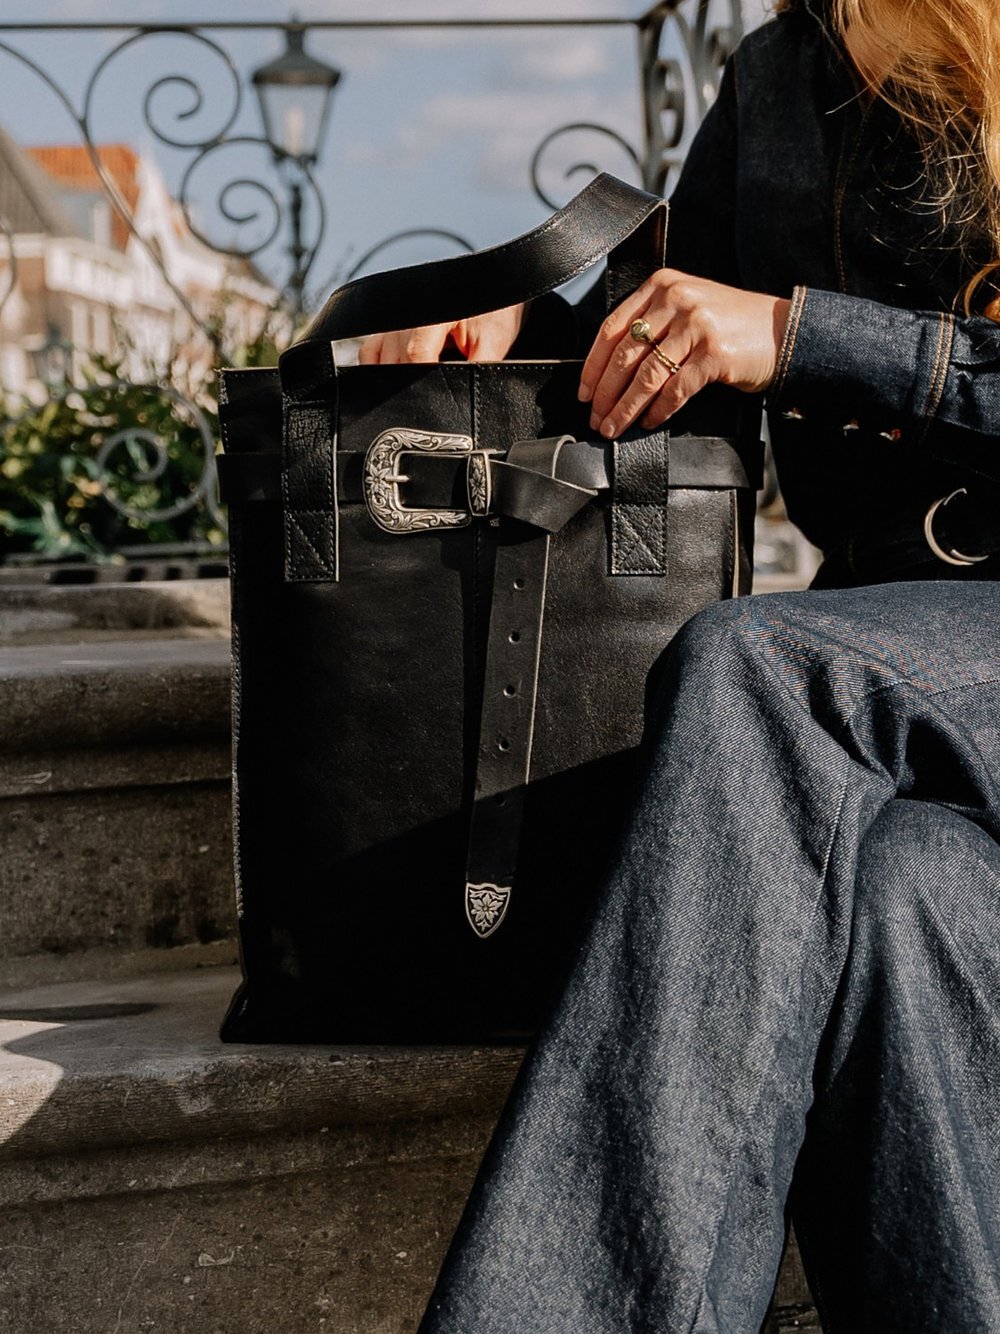 Verantwoordelijk persoon Slaapkamer Pakket Leather Design | uQQies Supergave én betaalbare tassen en accessoires!